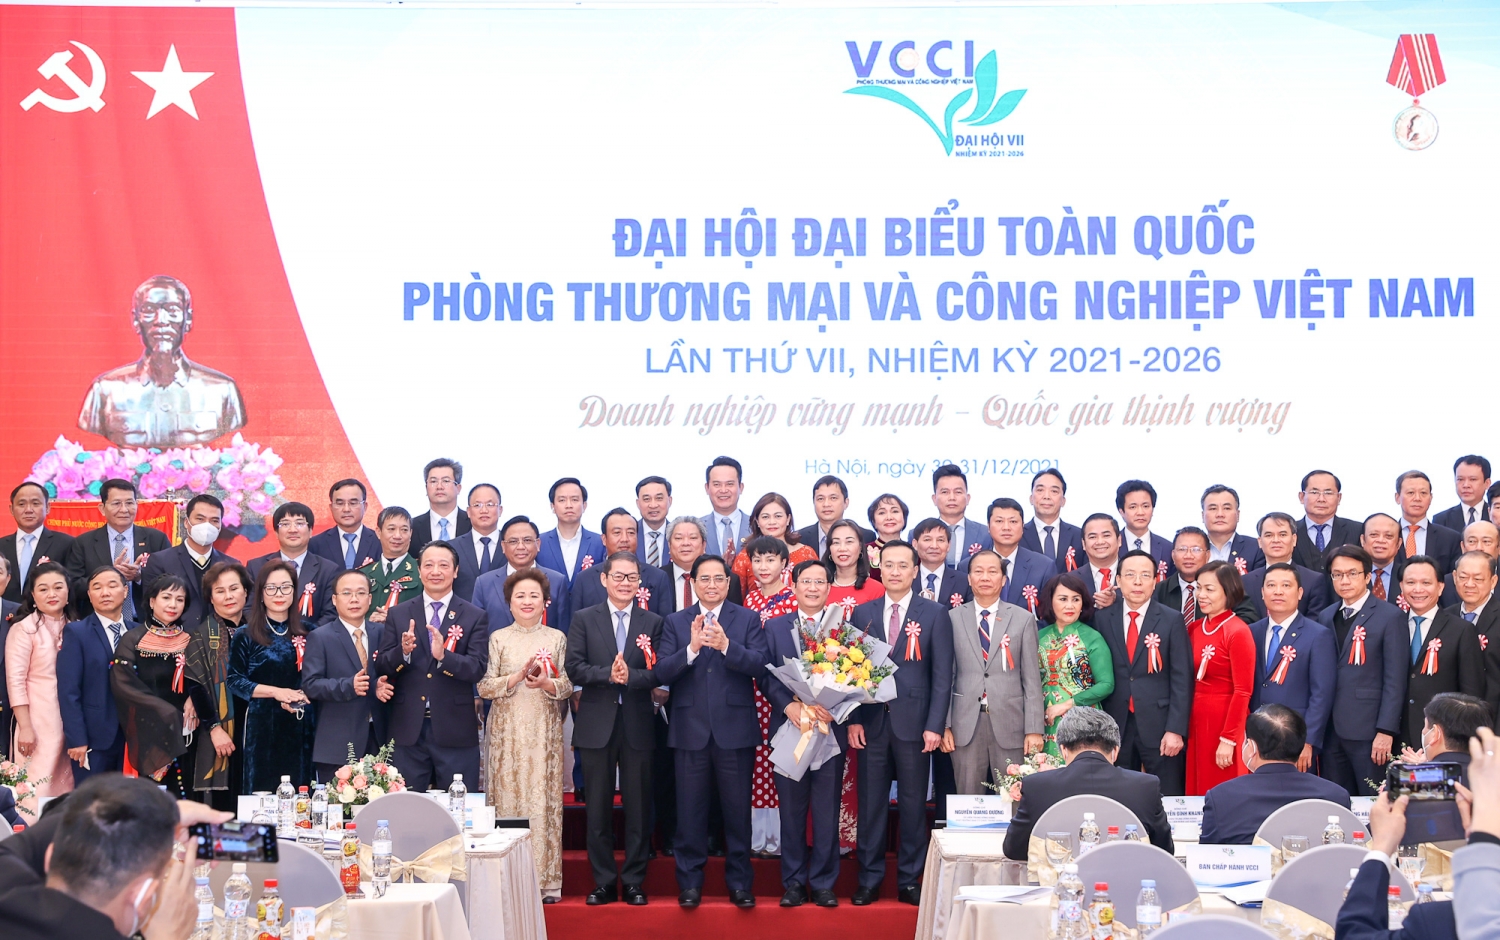 Tổng Giám đốc Petrovietnam Lê Mạnh Hùng trúng cử Ban Chấp hành VCCI khóa VII